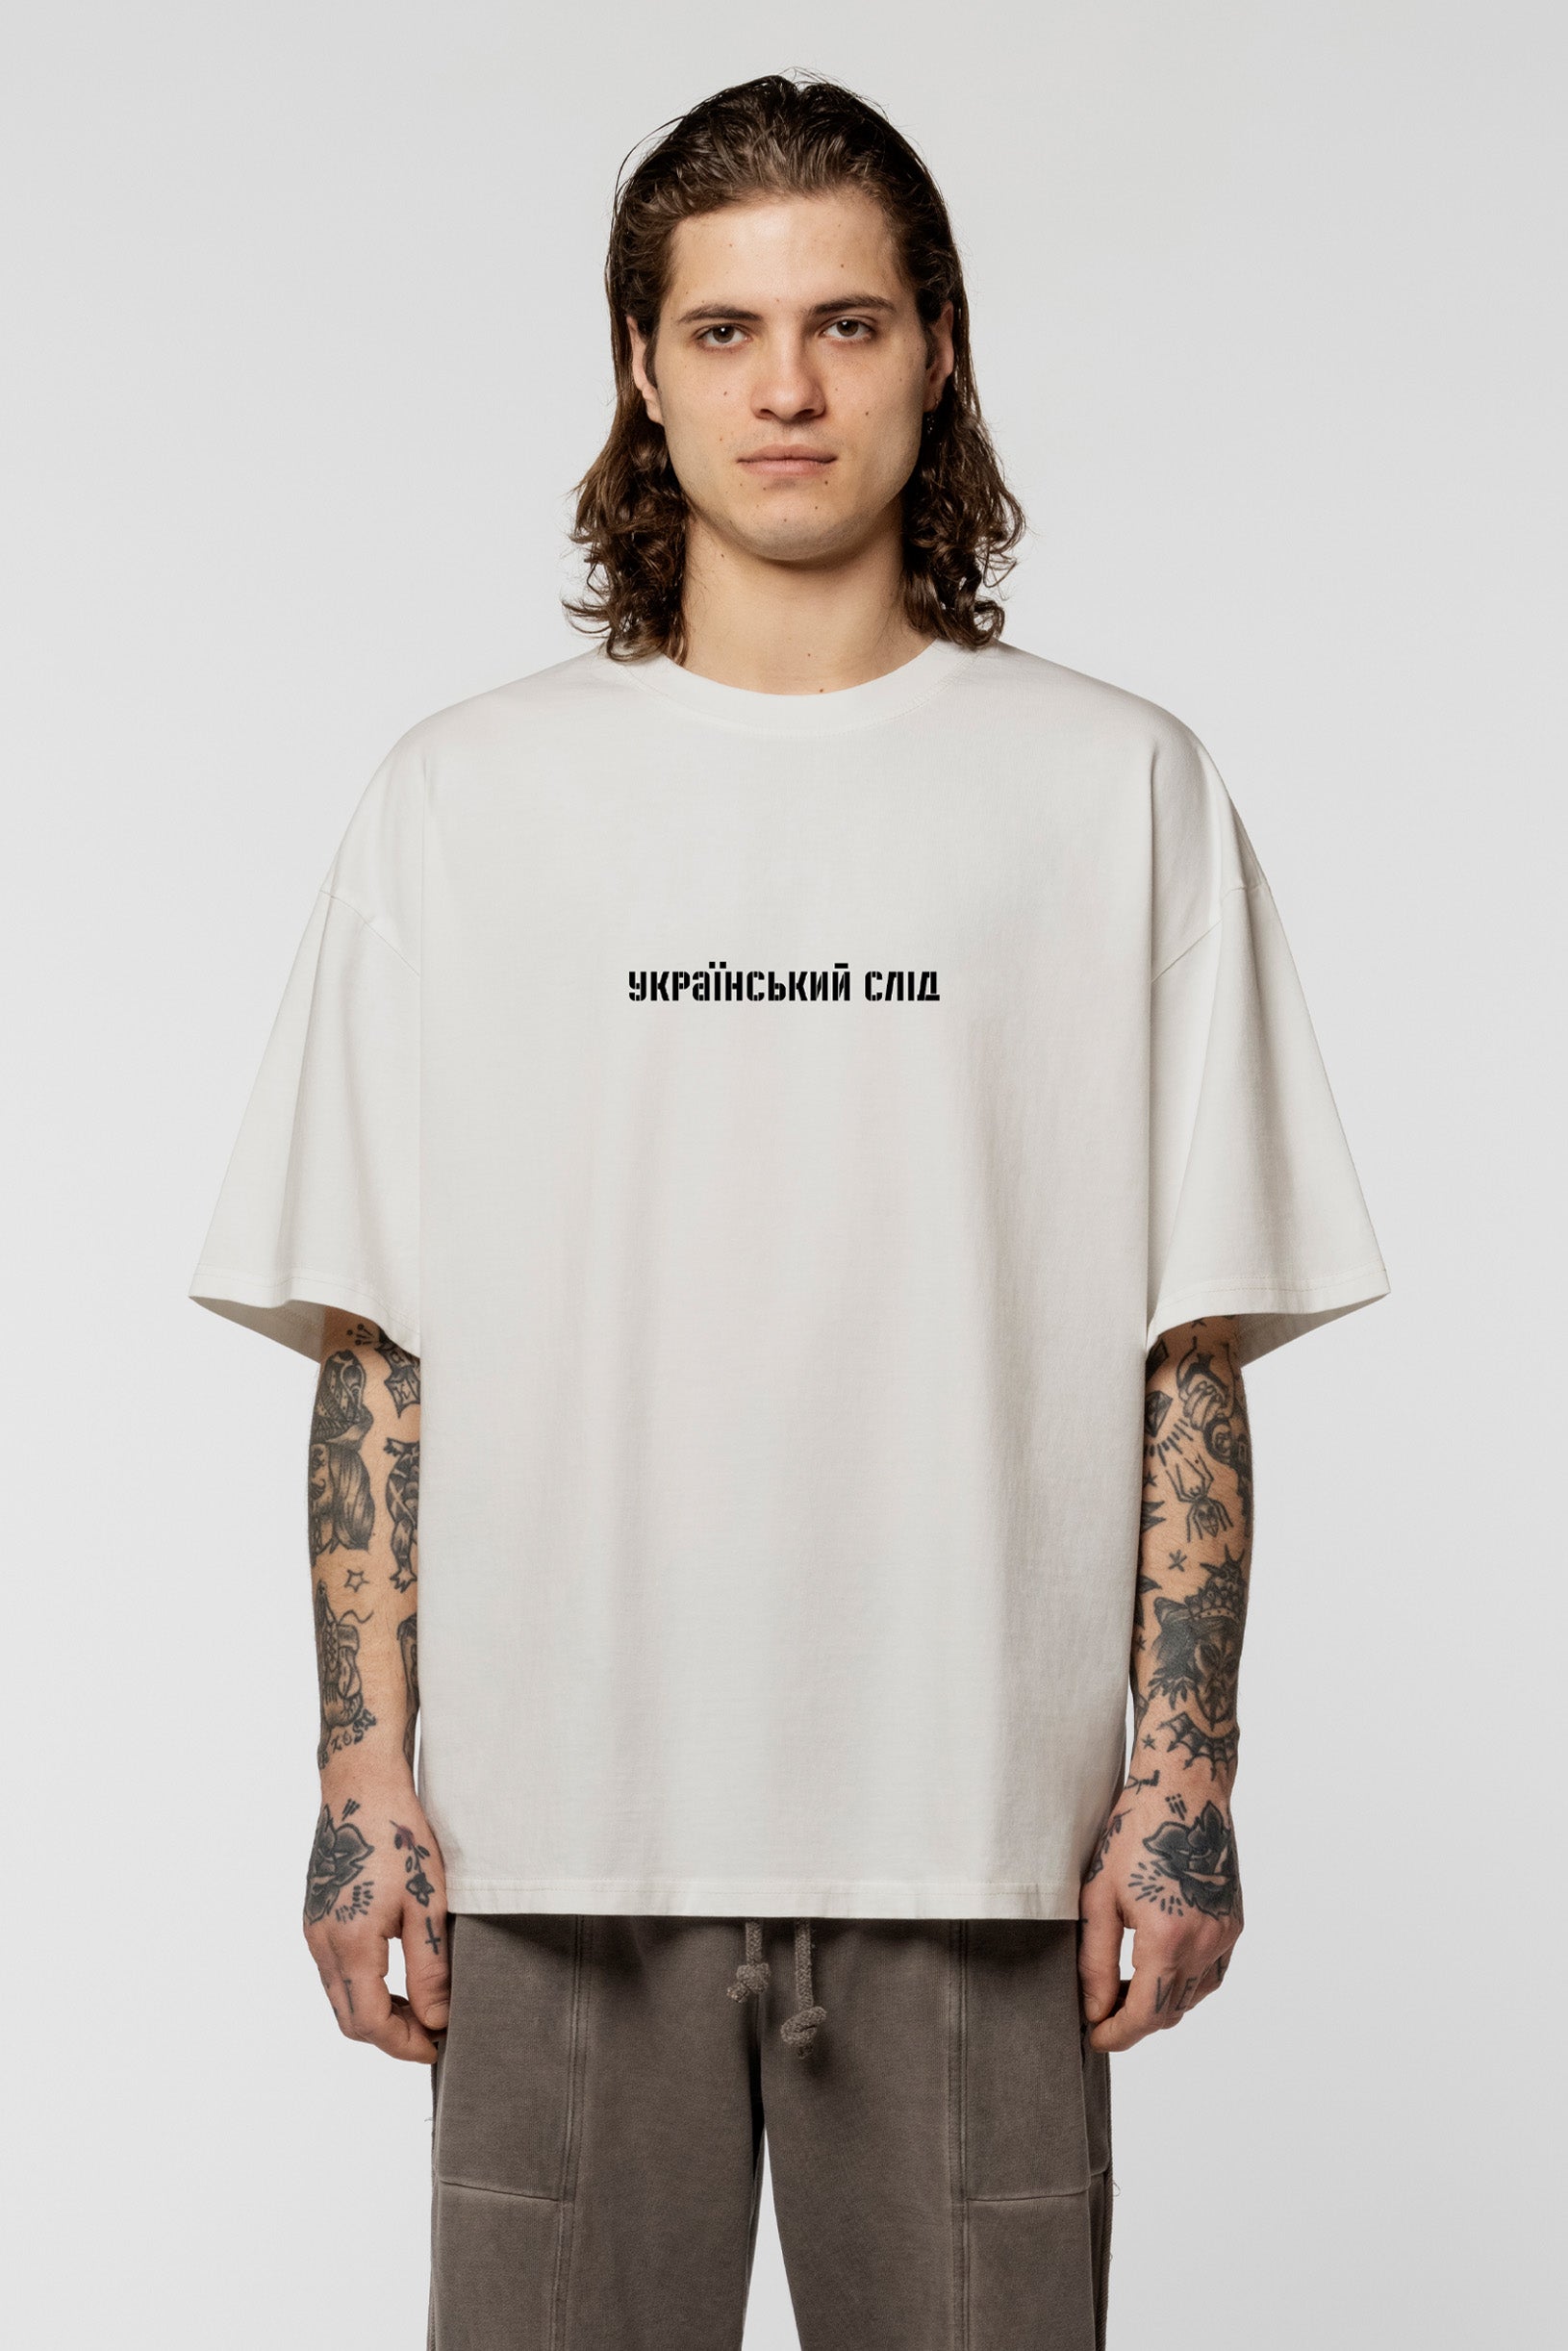 SNDCT x Vova Vorotniov "Ukrainian Trace" Oversize T-shirt White